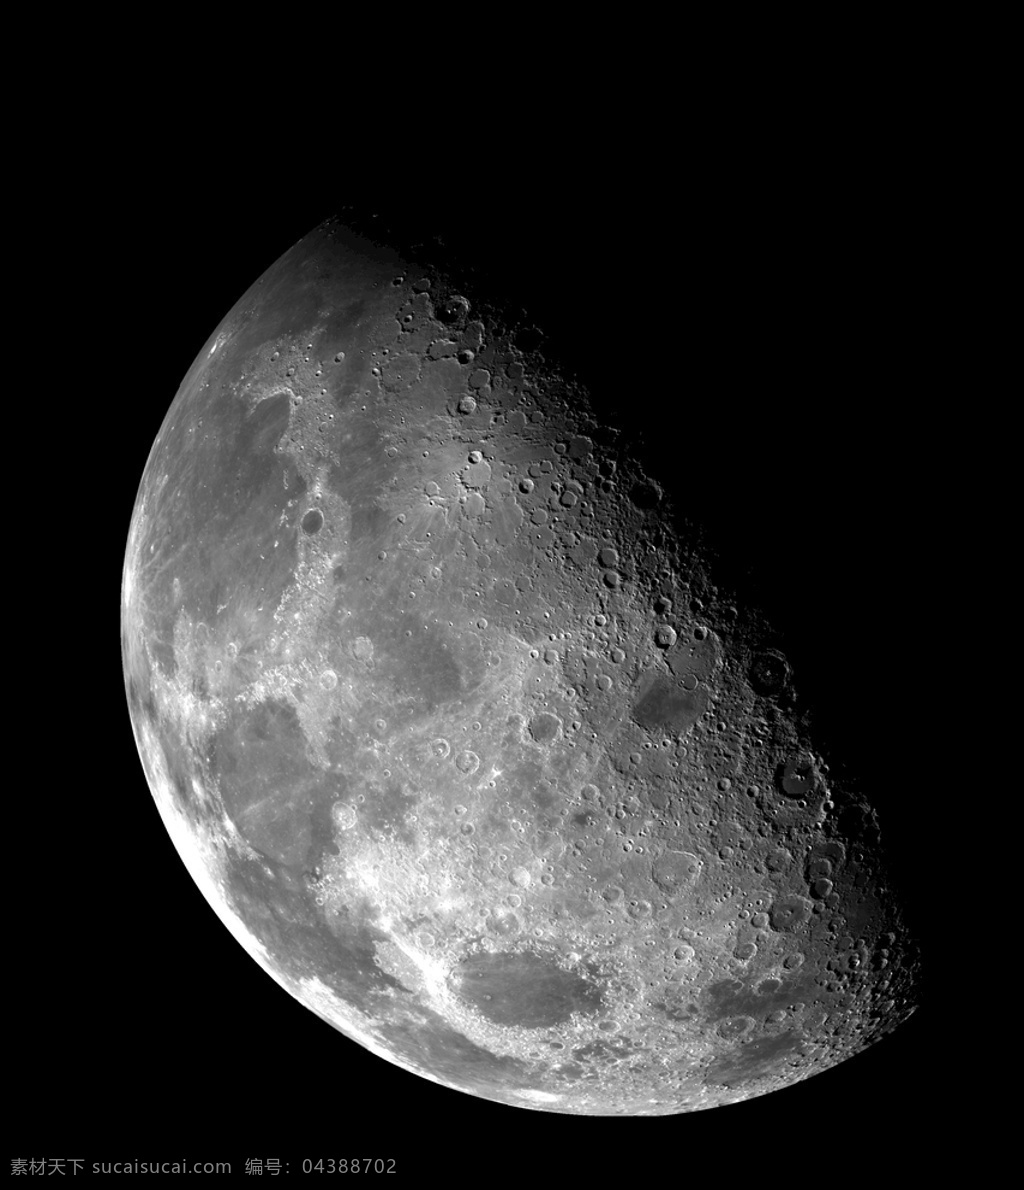 月亮 月球 自然生态 背景 素材图片 自然 生态 简约留白背景